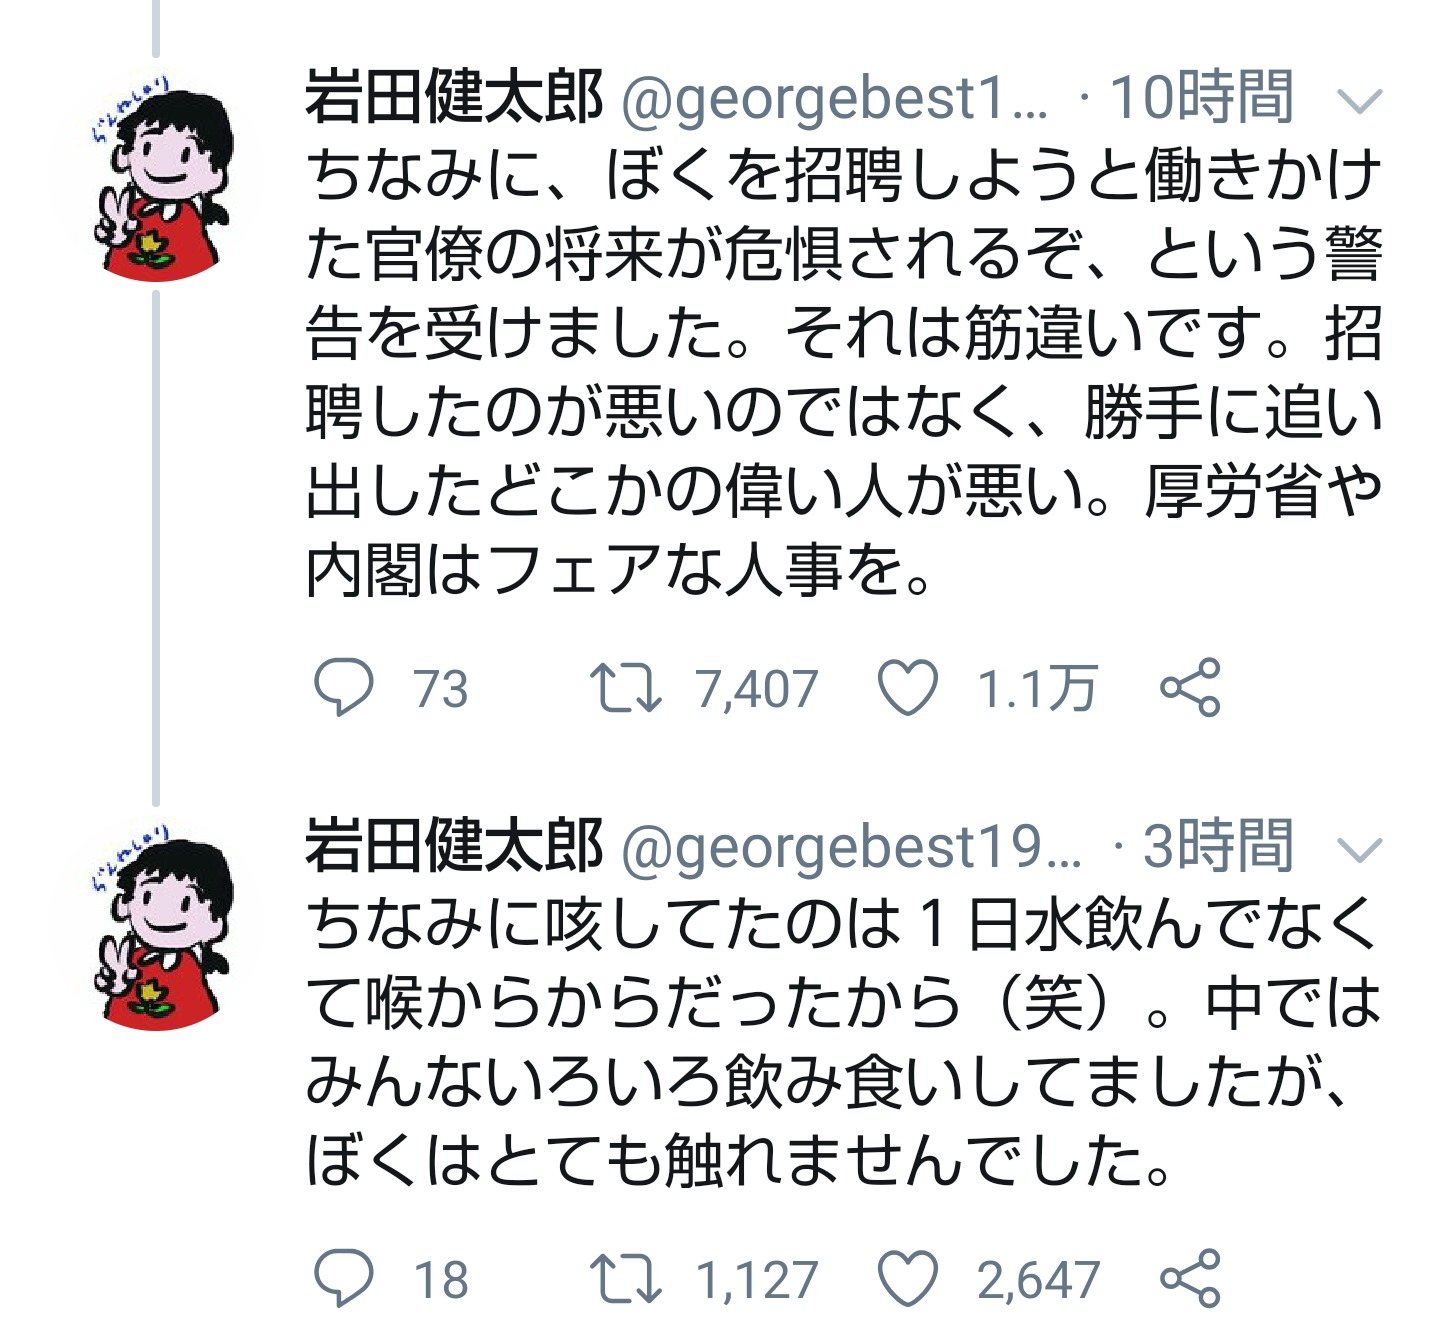 【悲報】日本政府、クルーズ船から感染症対策専門家を追放。SUKOTubeで怒りの告発